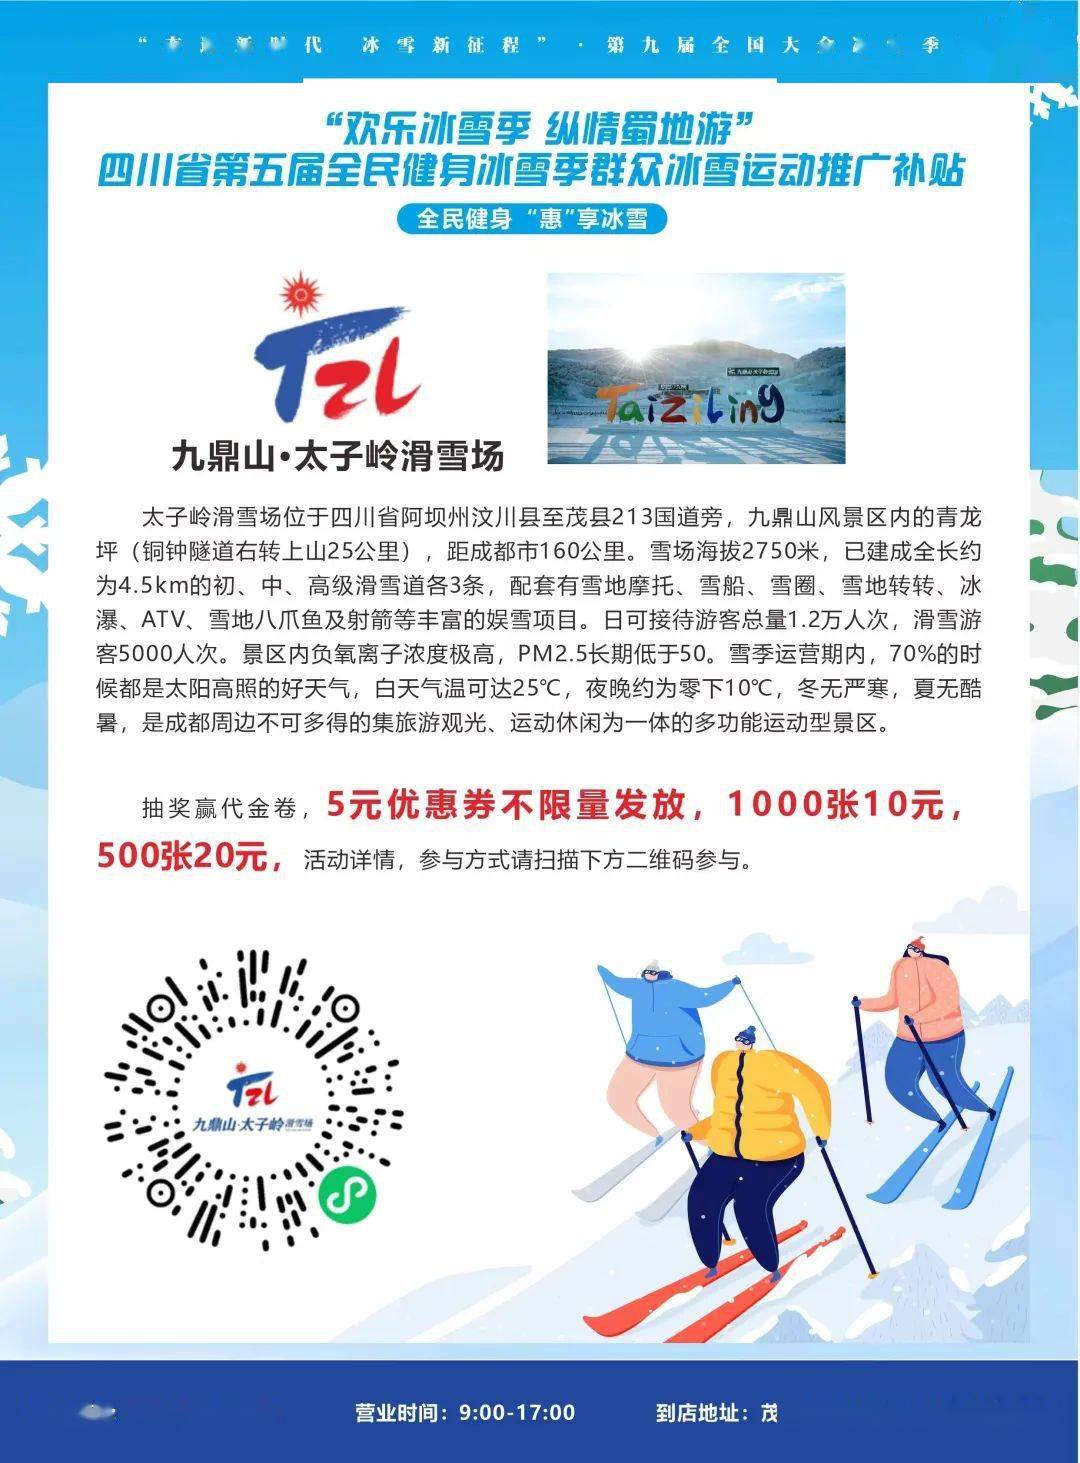 168体育官网|“全民健身冰雪季”惠民优惠来了